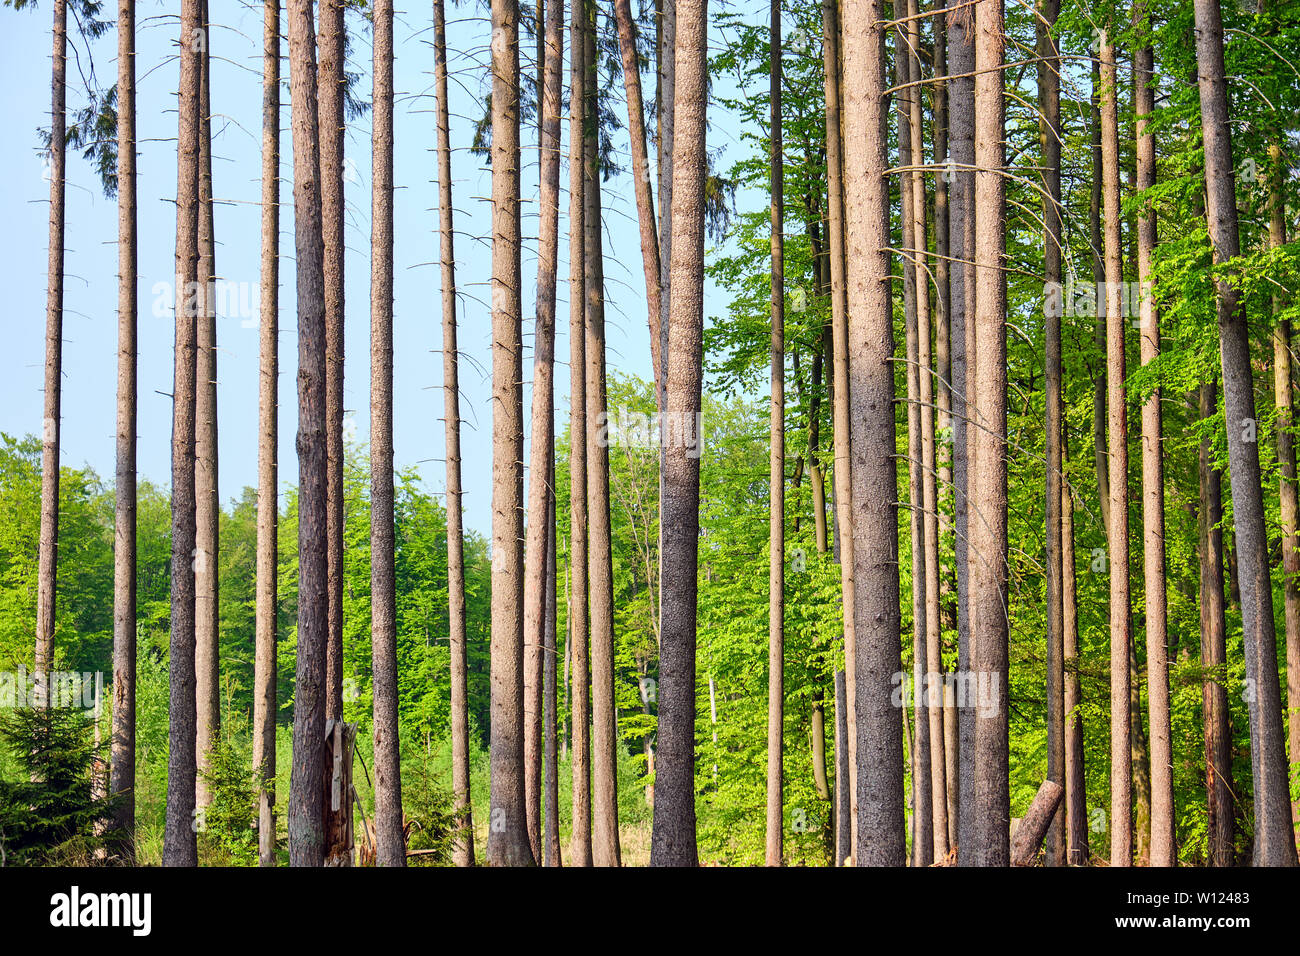 Détail de troncs d'épicéas vu dans une forêt allemande Banque D'Images